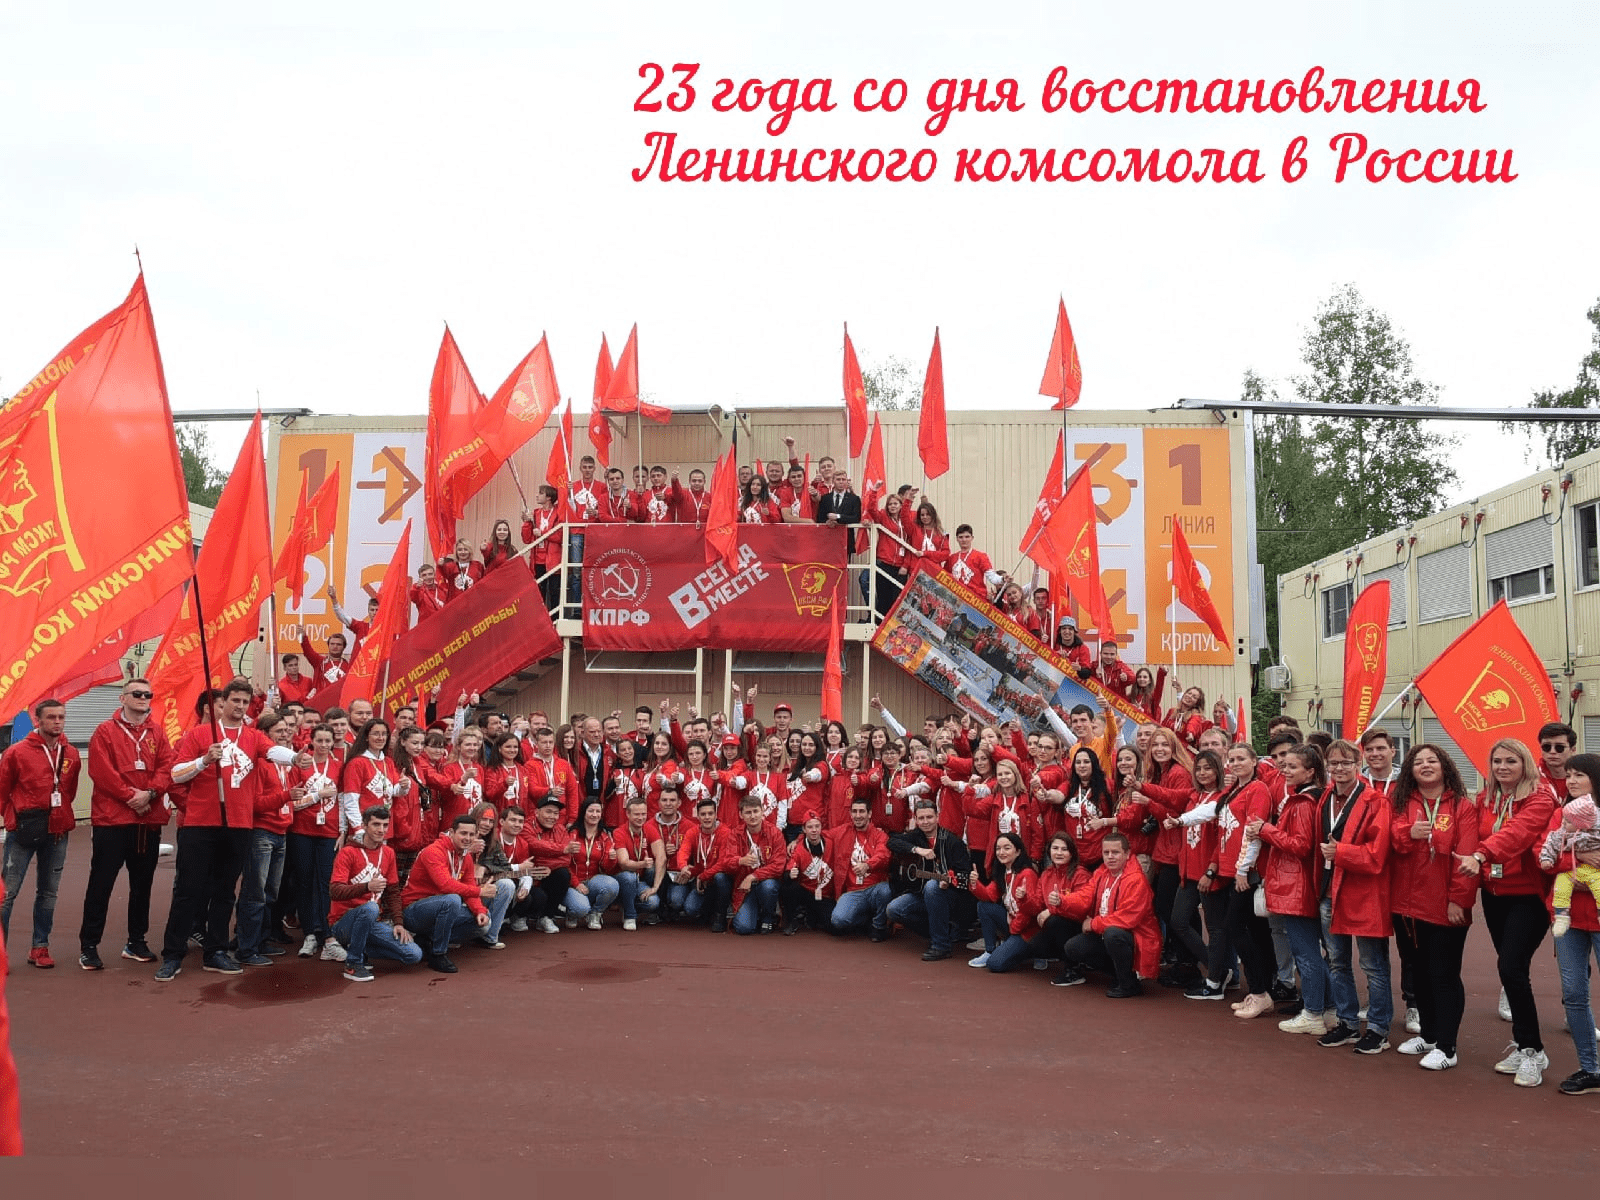 23 года со дня восстановления Ленинского комсомола в России!